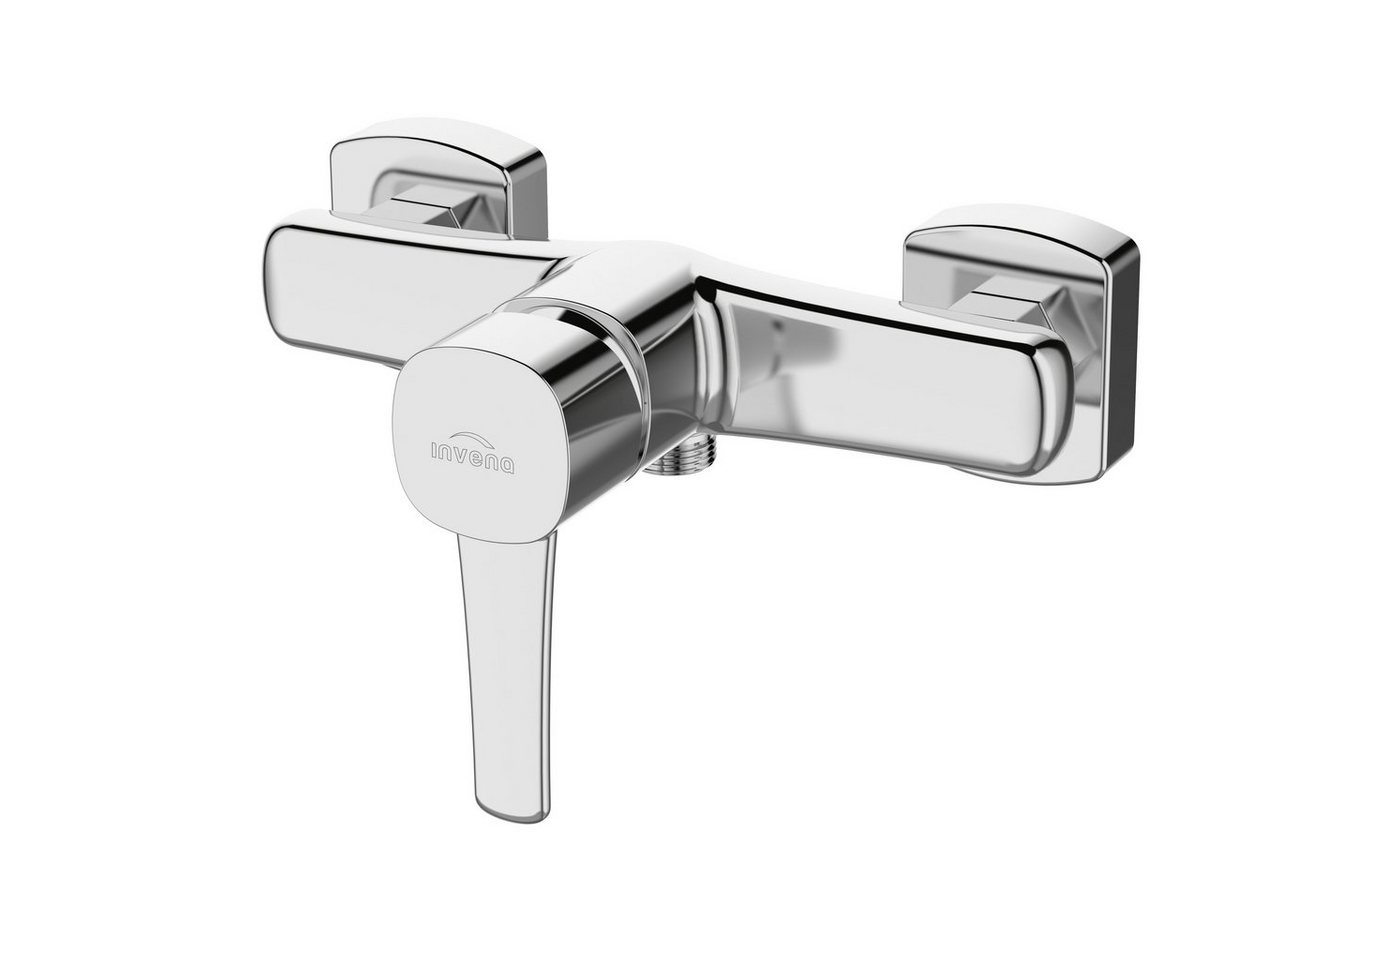 KOLMAN Duscharmatur GLAMOUR Dusche Wasserhahn Mischbatterie für Badezimmer in Silber von KOLMAN